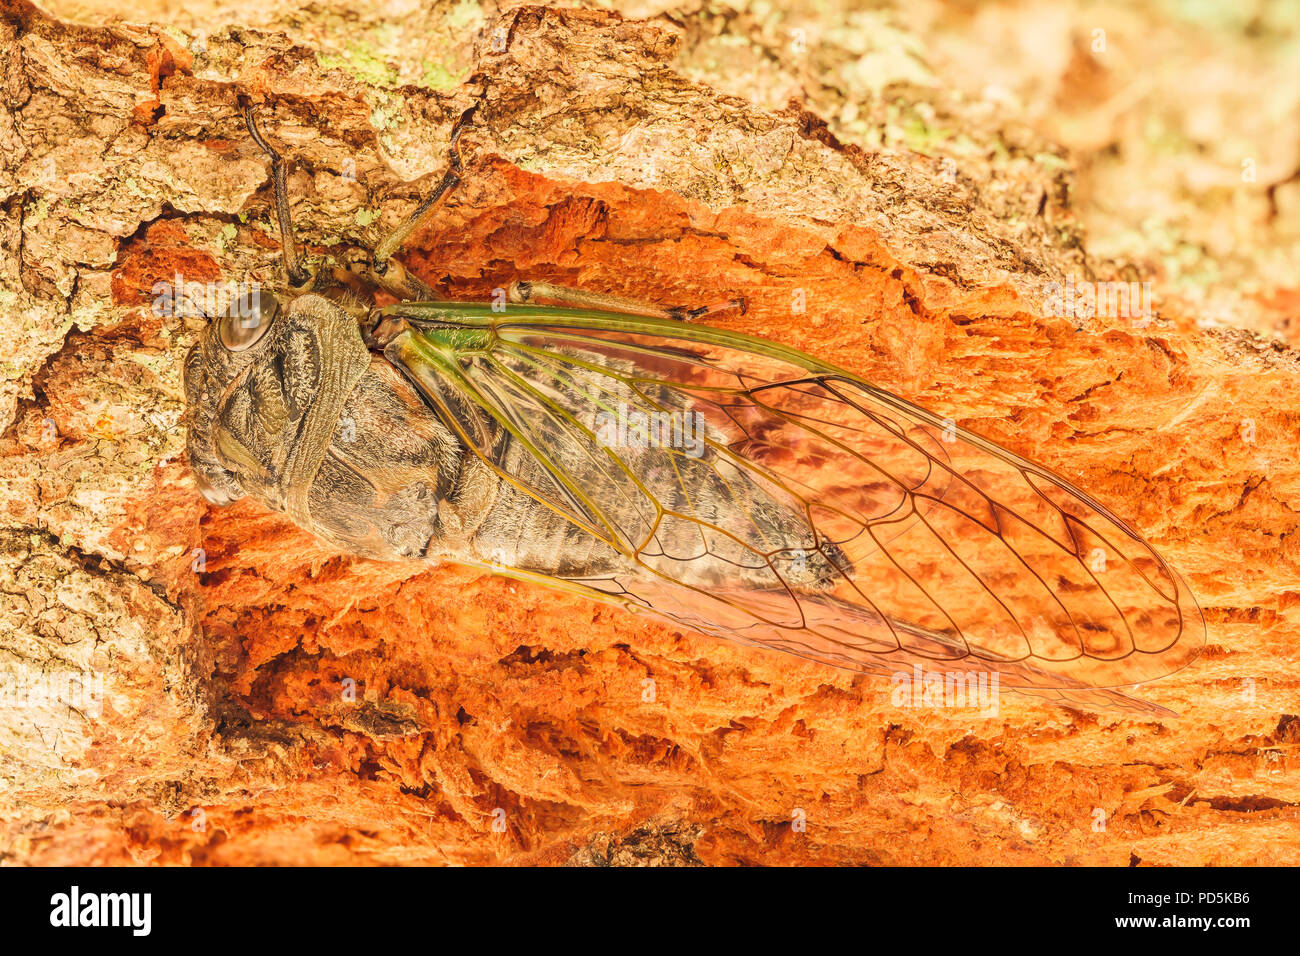 Ein Hund - Tag Zikade (Neotibicen canicularis) Sitzstangen in einem gefallenen Baumstamm. Stockfoto